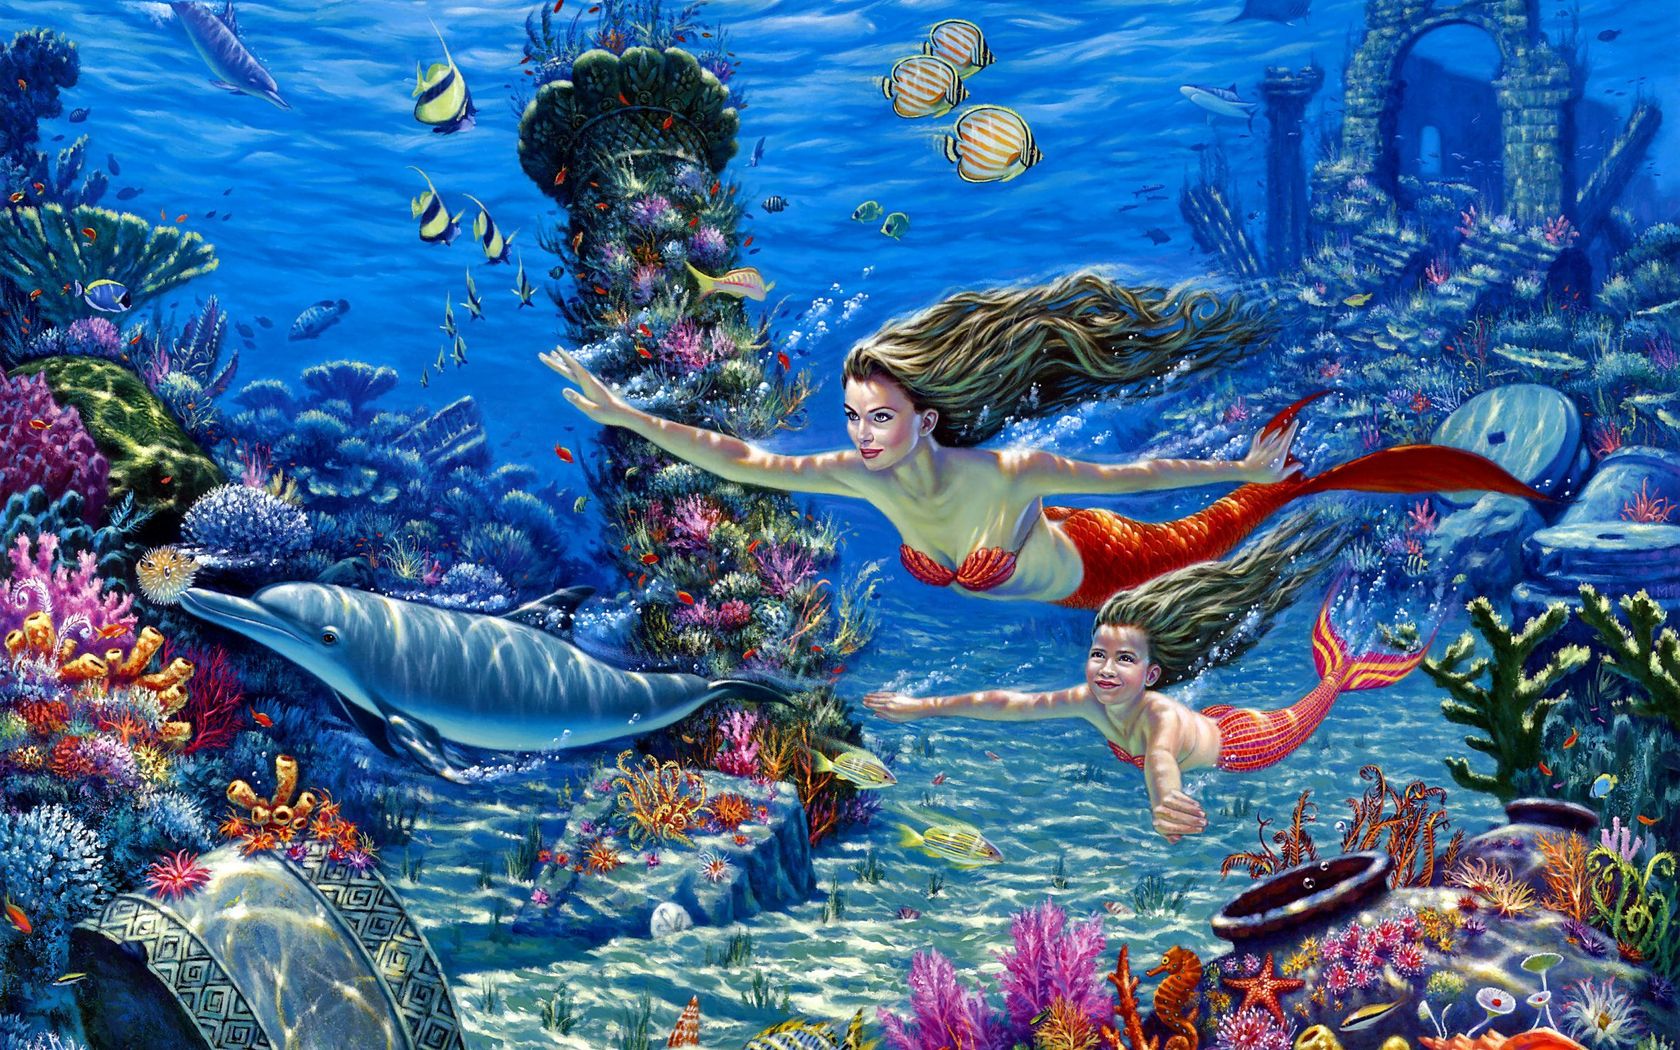 50+] Free Live Wallpapers Mermaid - WallpaperSafari